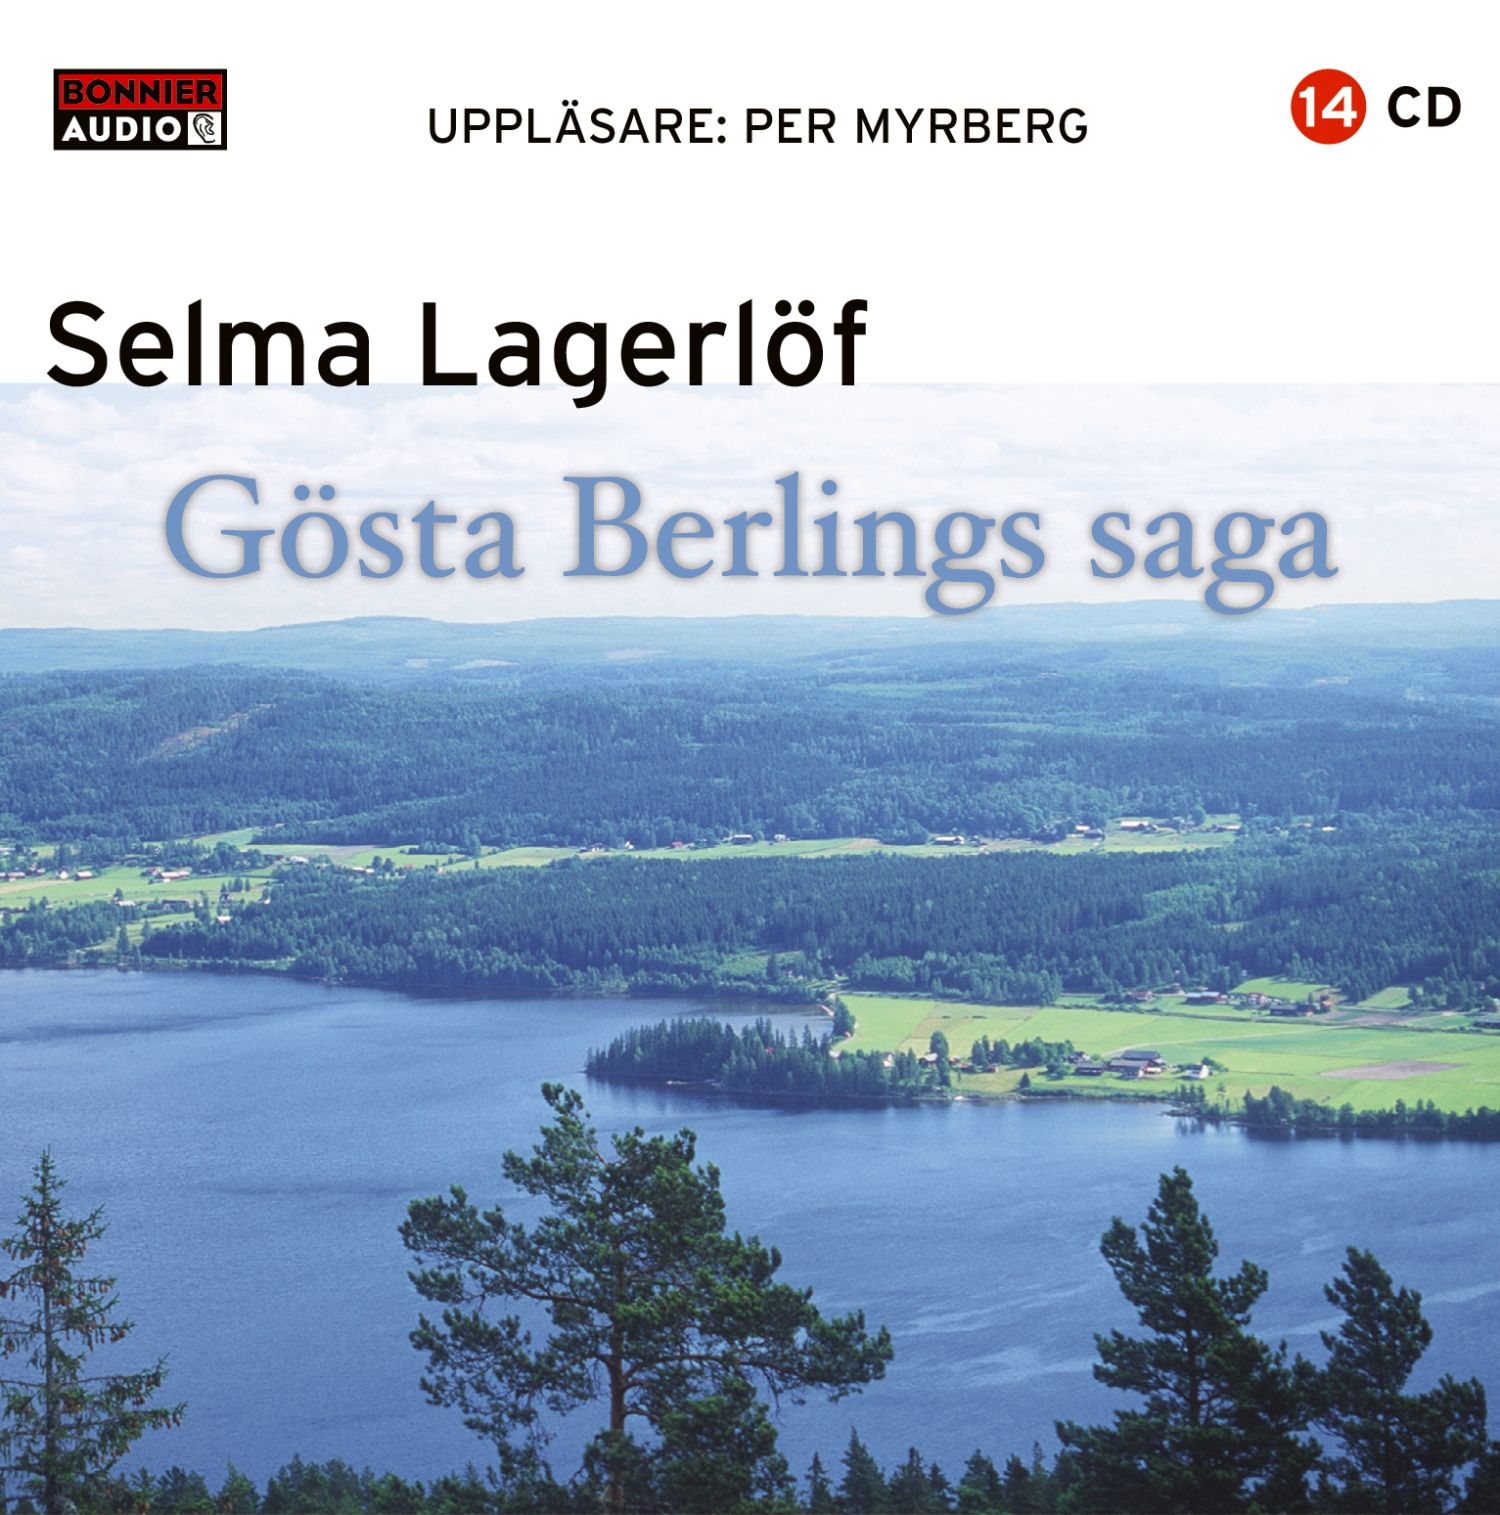 Gösta Berlings saga, ljudbok av Selma Lagerlöf